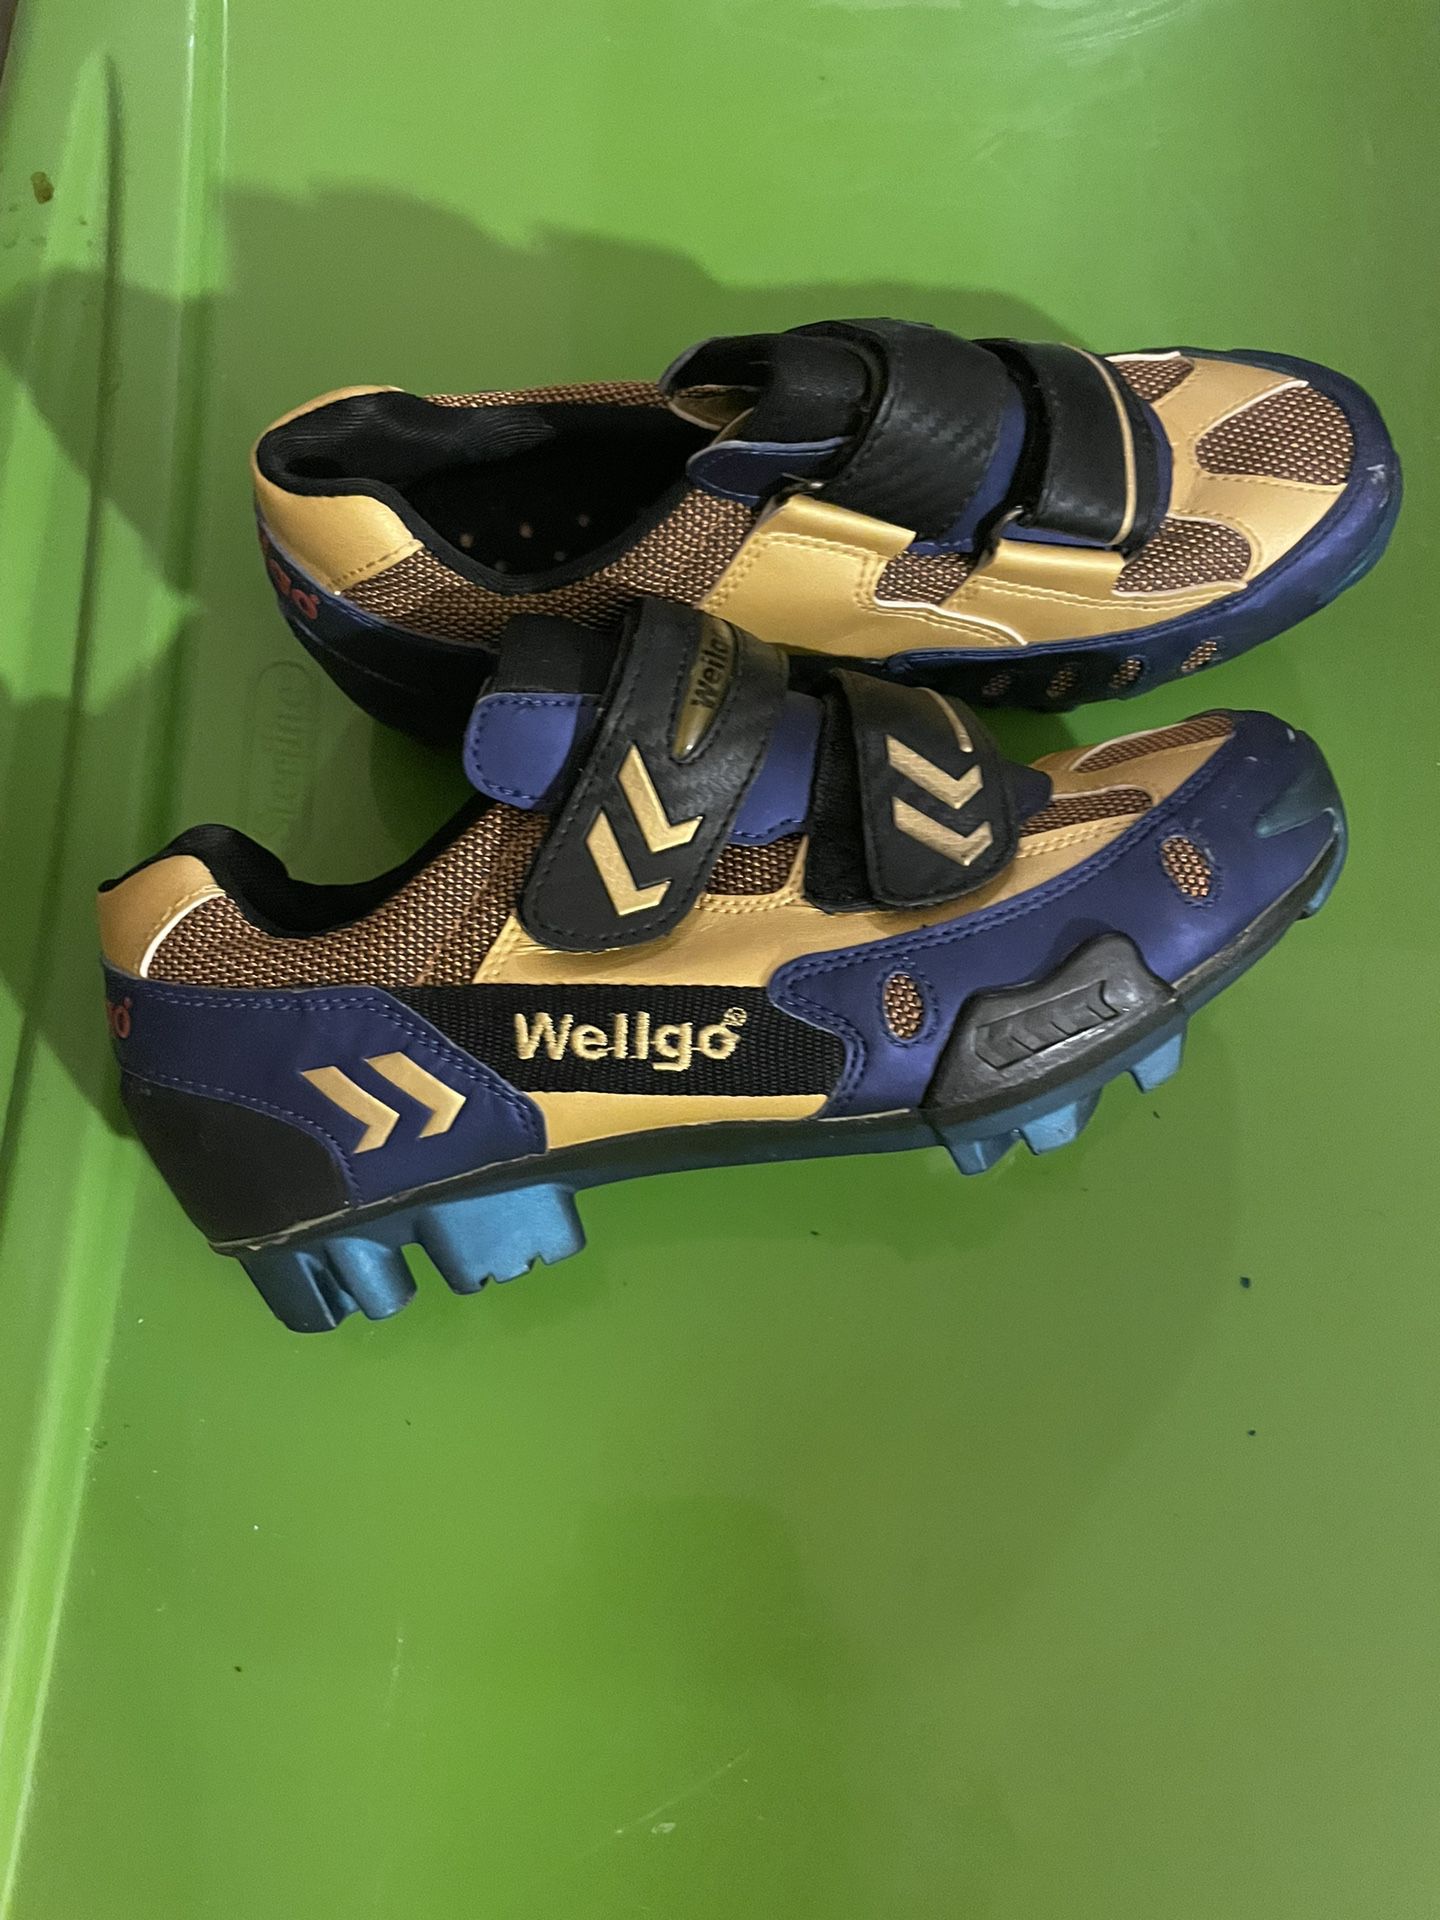 Wellgo cycle Shoes 